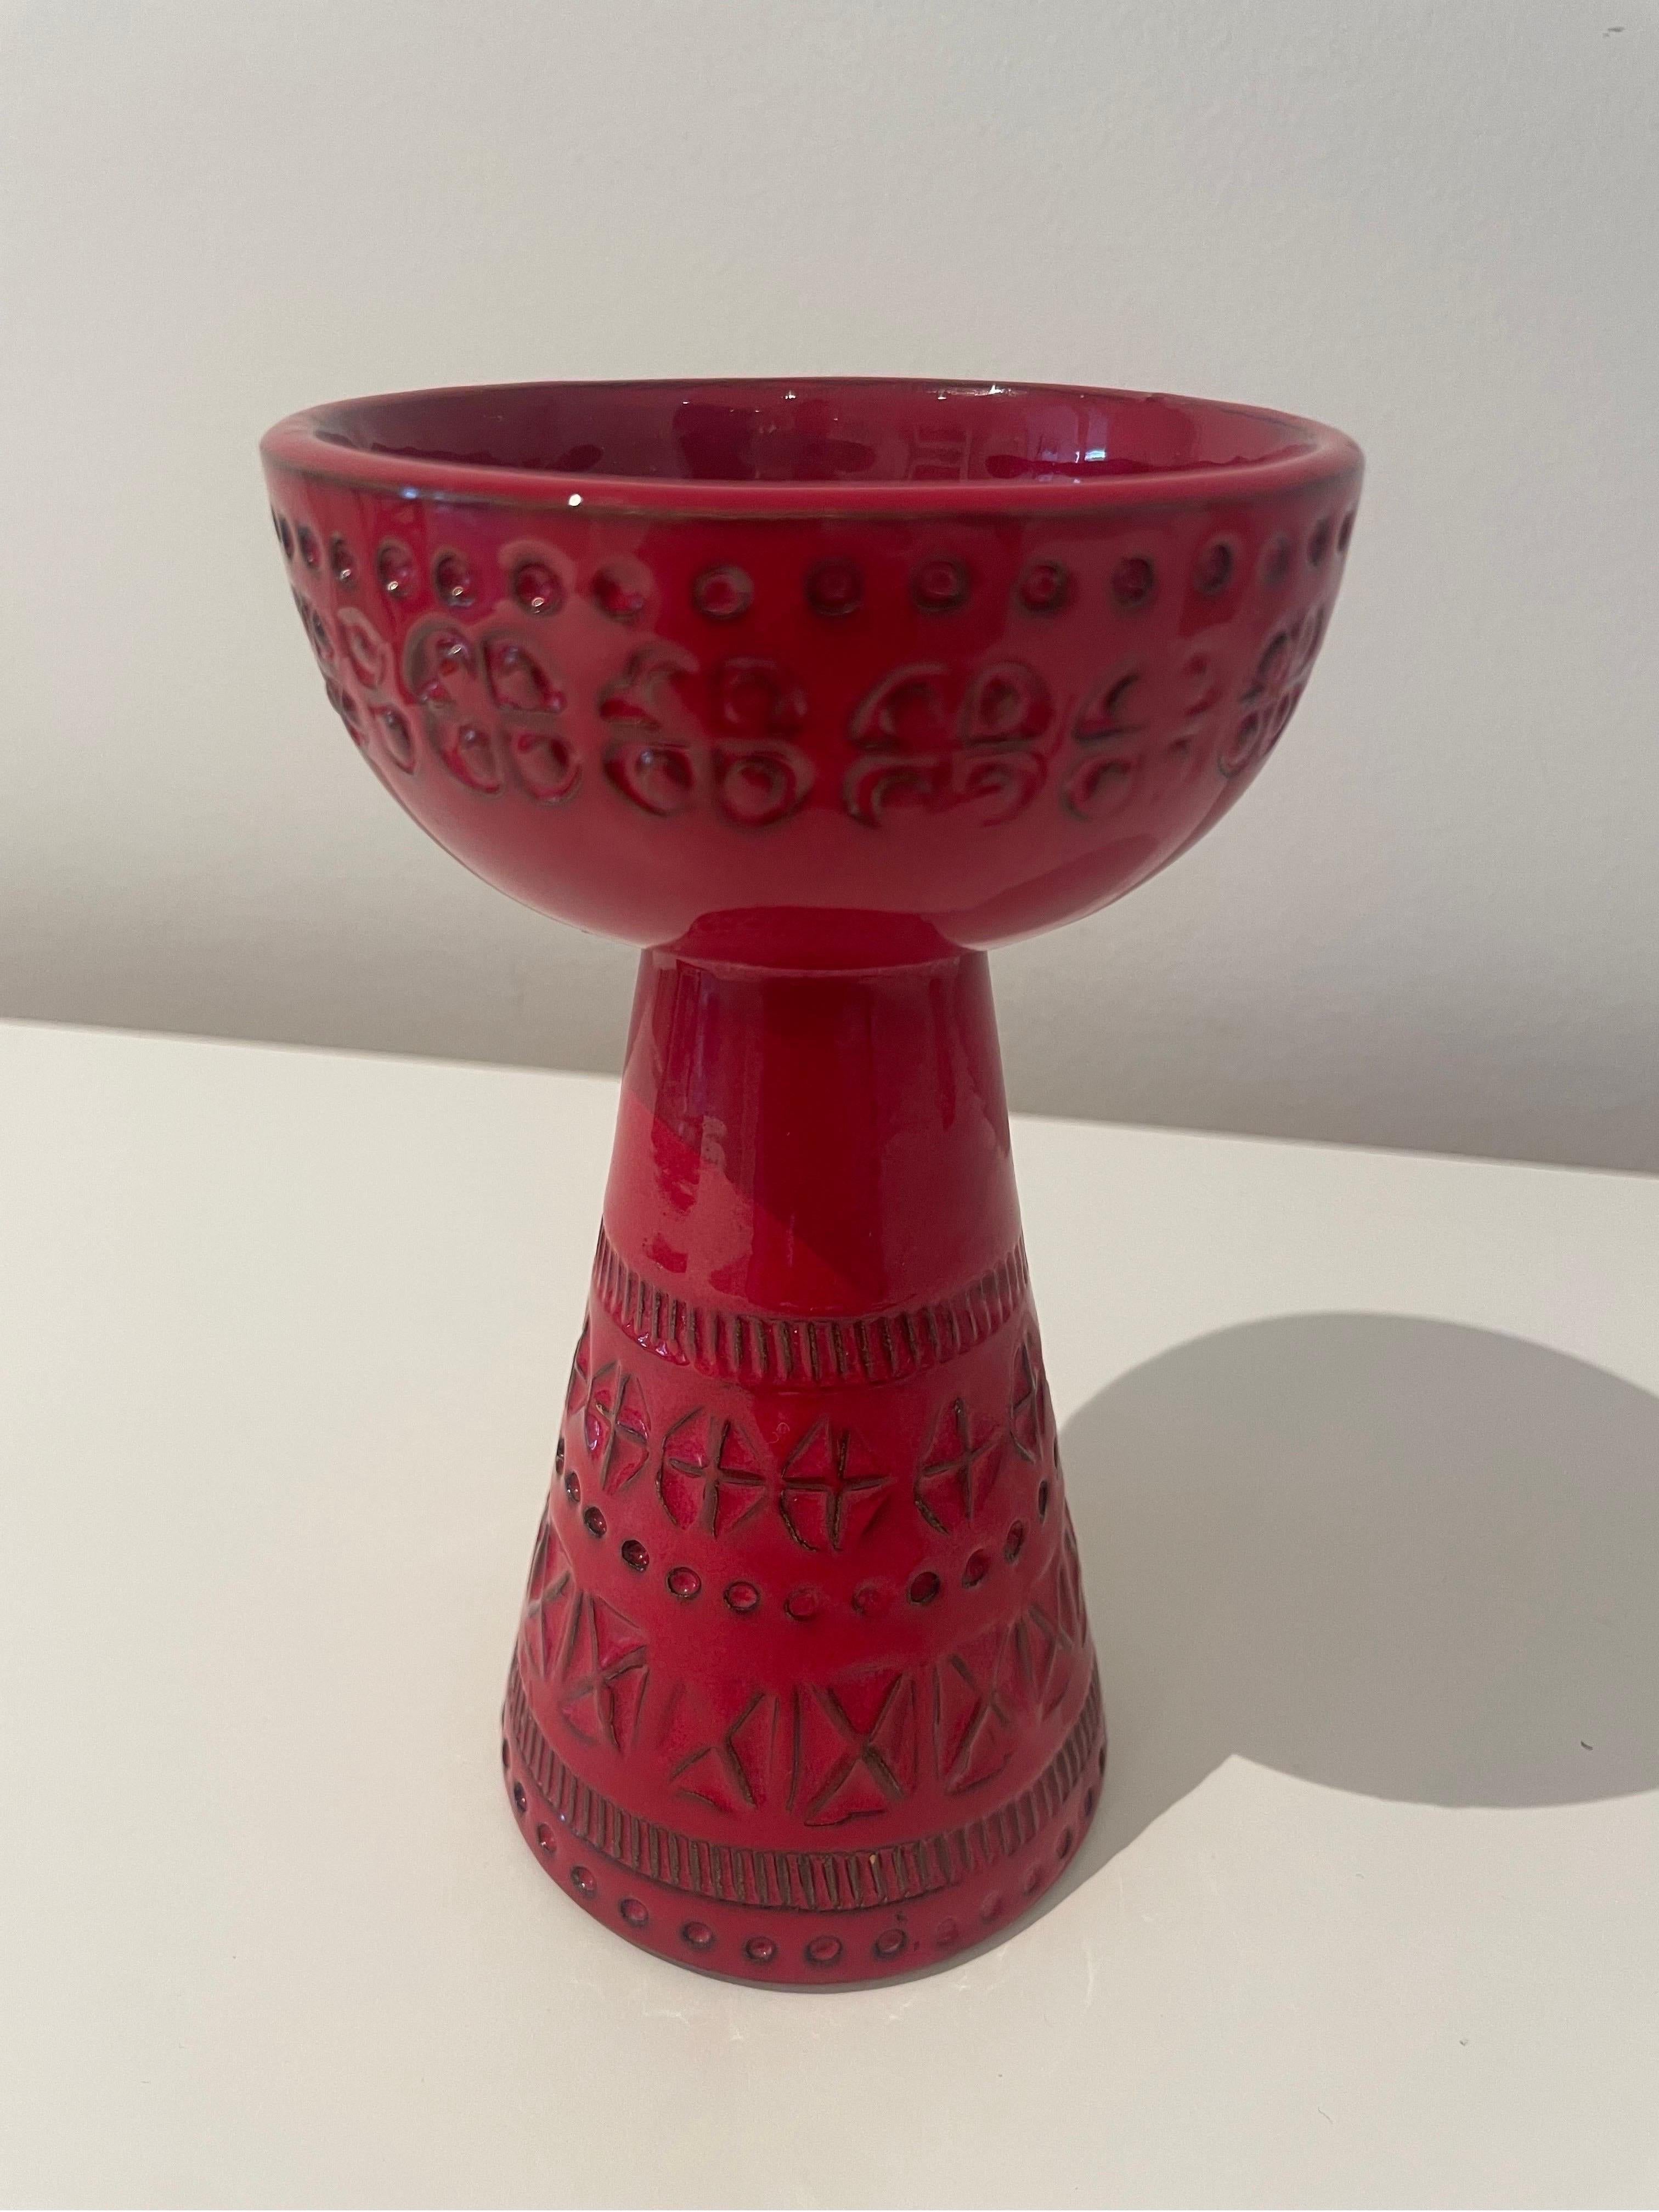 Superbe bougeoir/vase en céramique de Bitossi. Magnifique glaçure rouge composée de plusieurs couches de glaçure de tons différents et de motifs sculptés à la main qui créent une belle structure irrégulière.